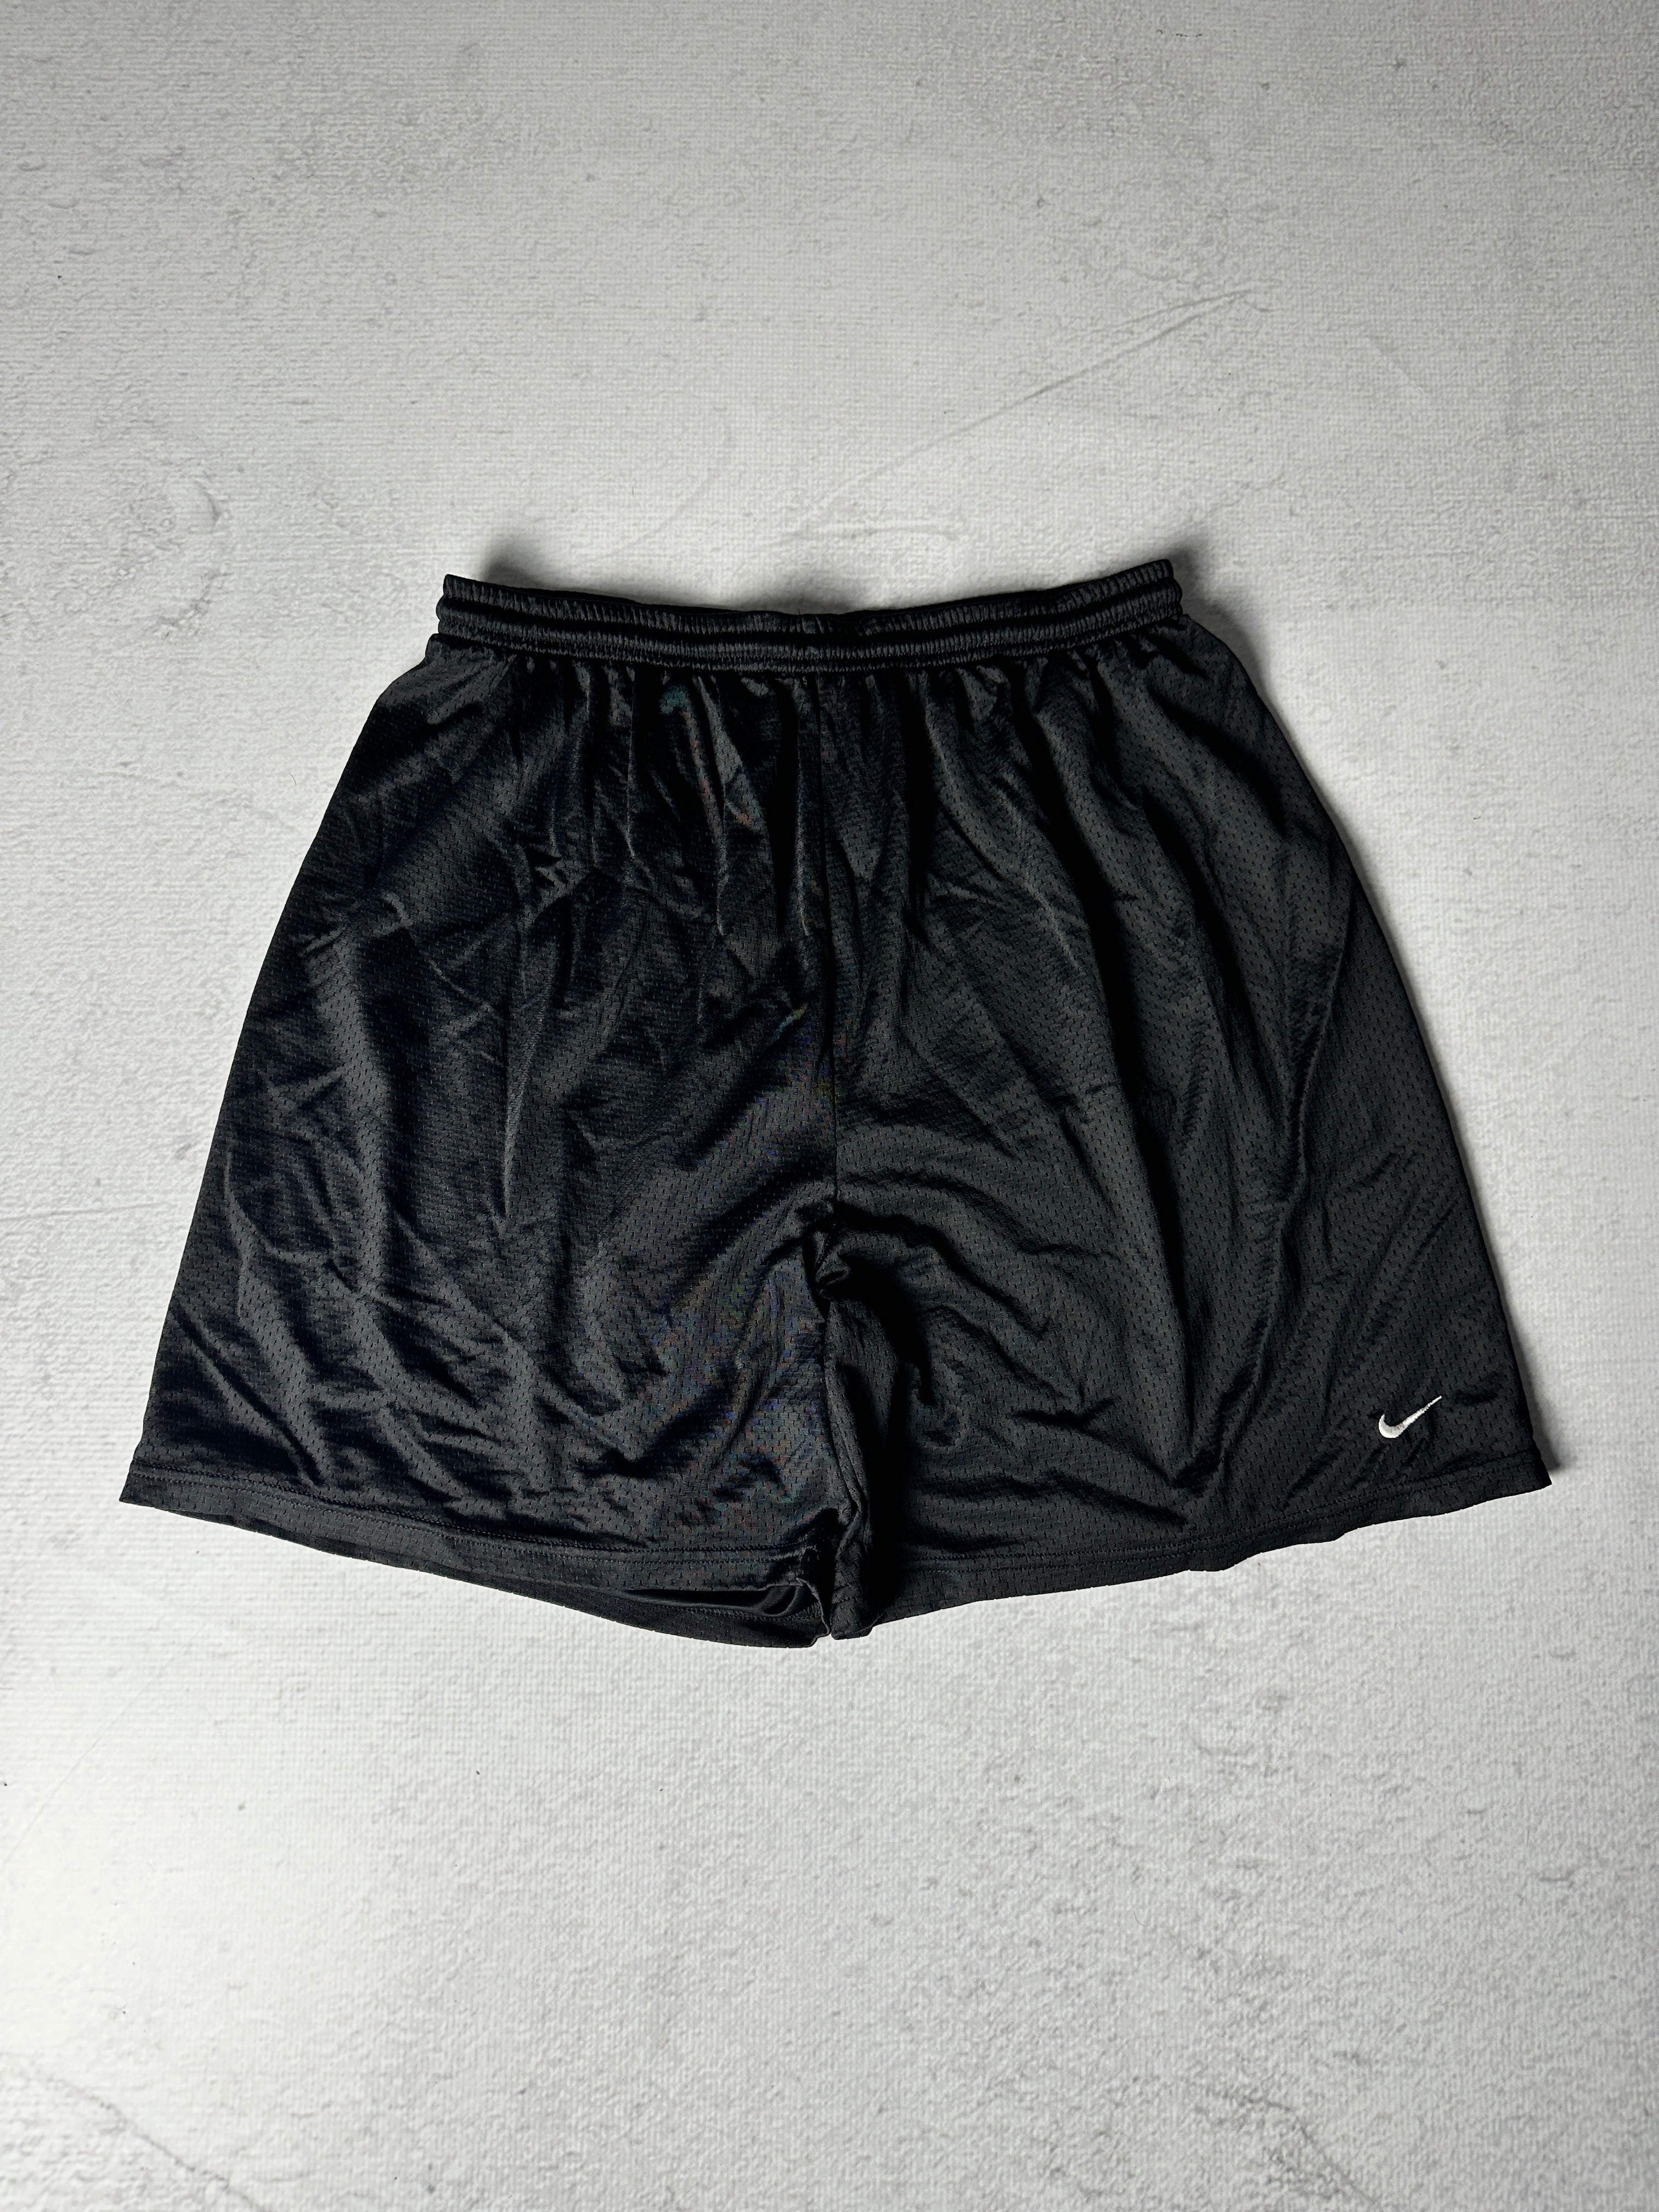 Vintage Nike Athletics Shorts - Men's XL